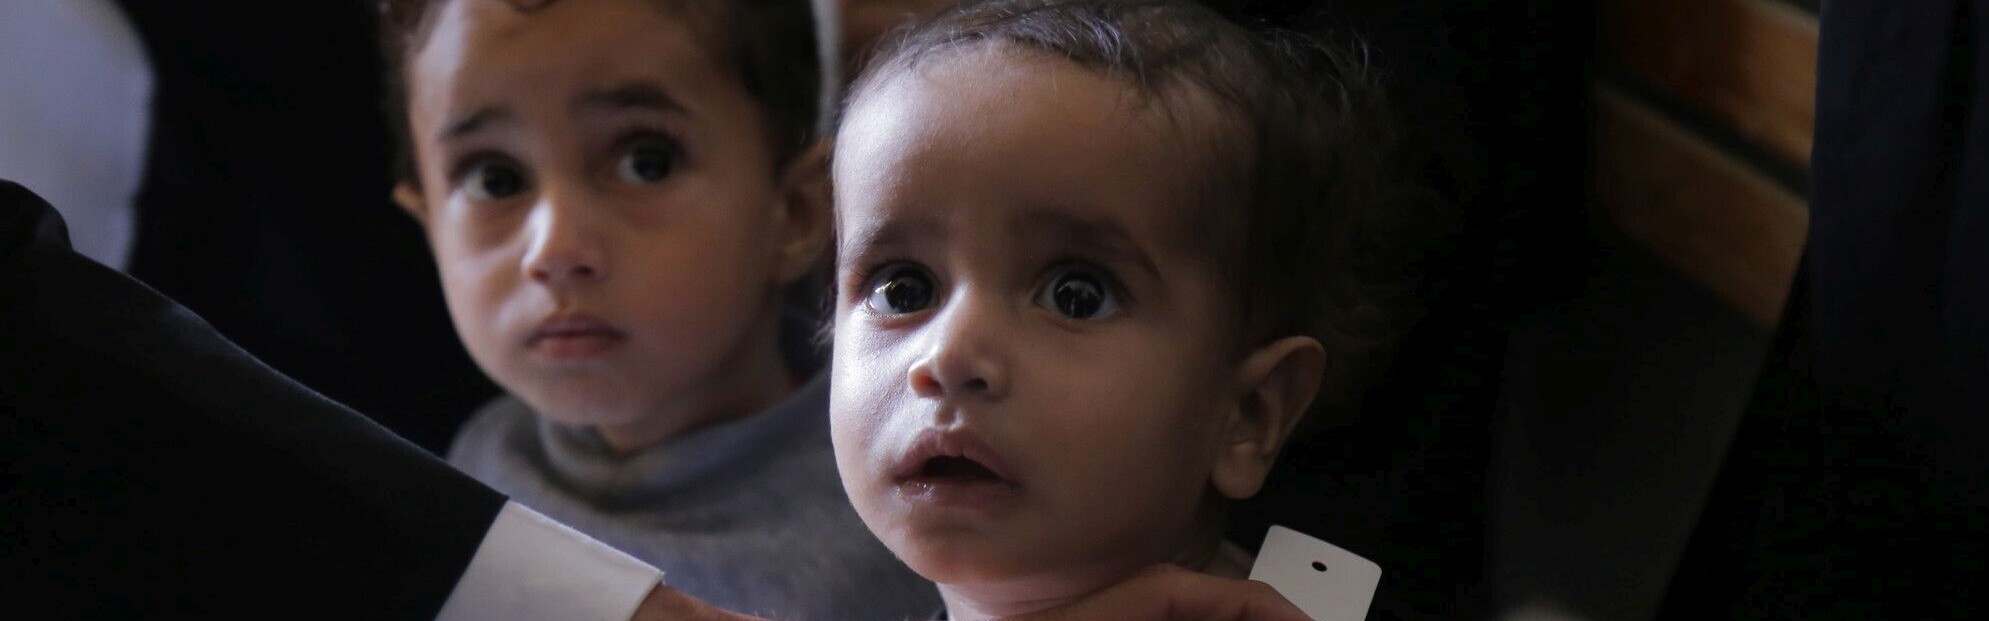 Ein kleines Kind mit Hungermaßband: Es leidet an Unterernährung und Cholera